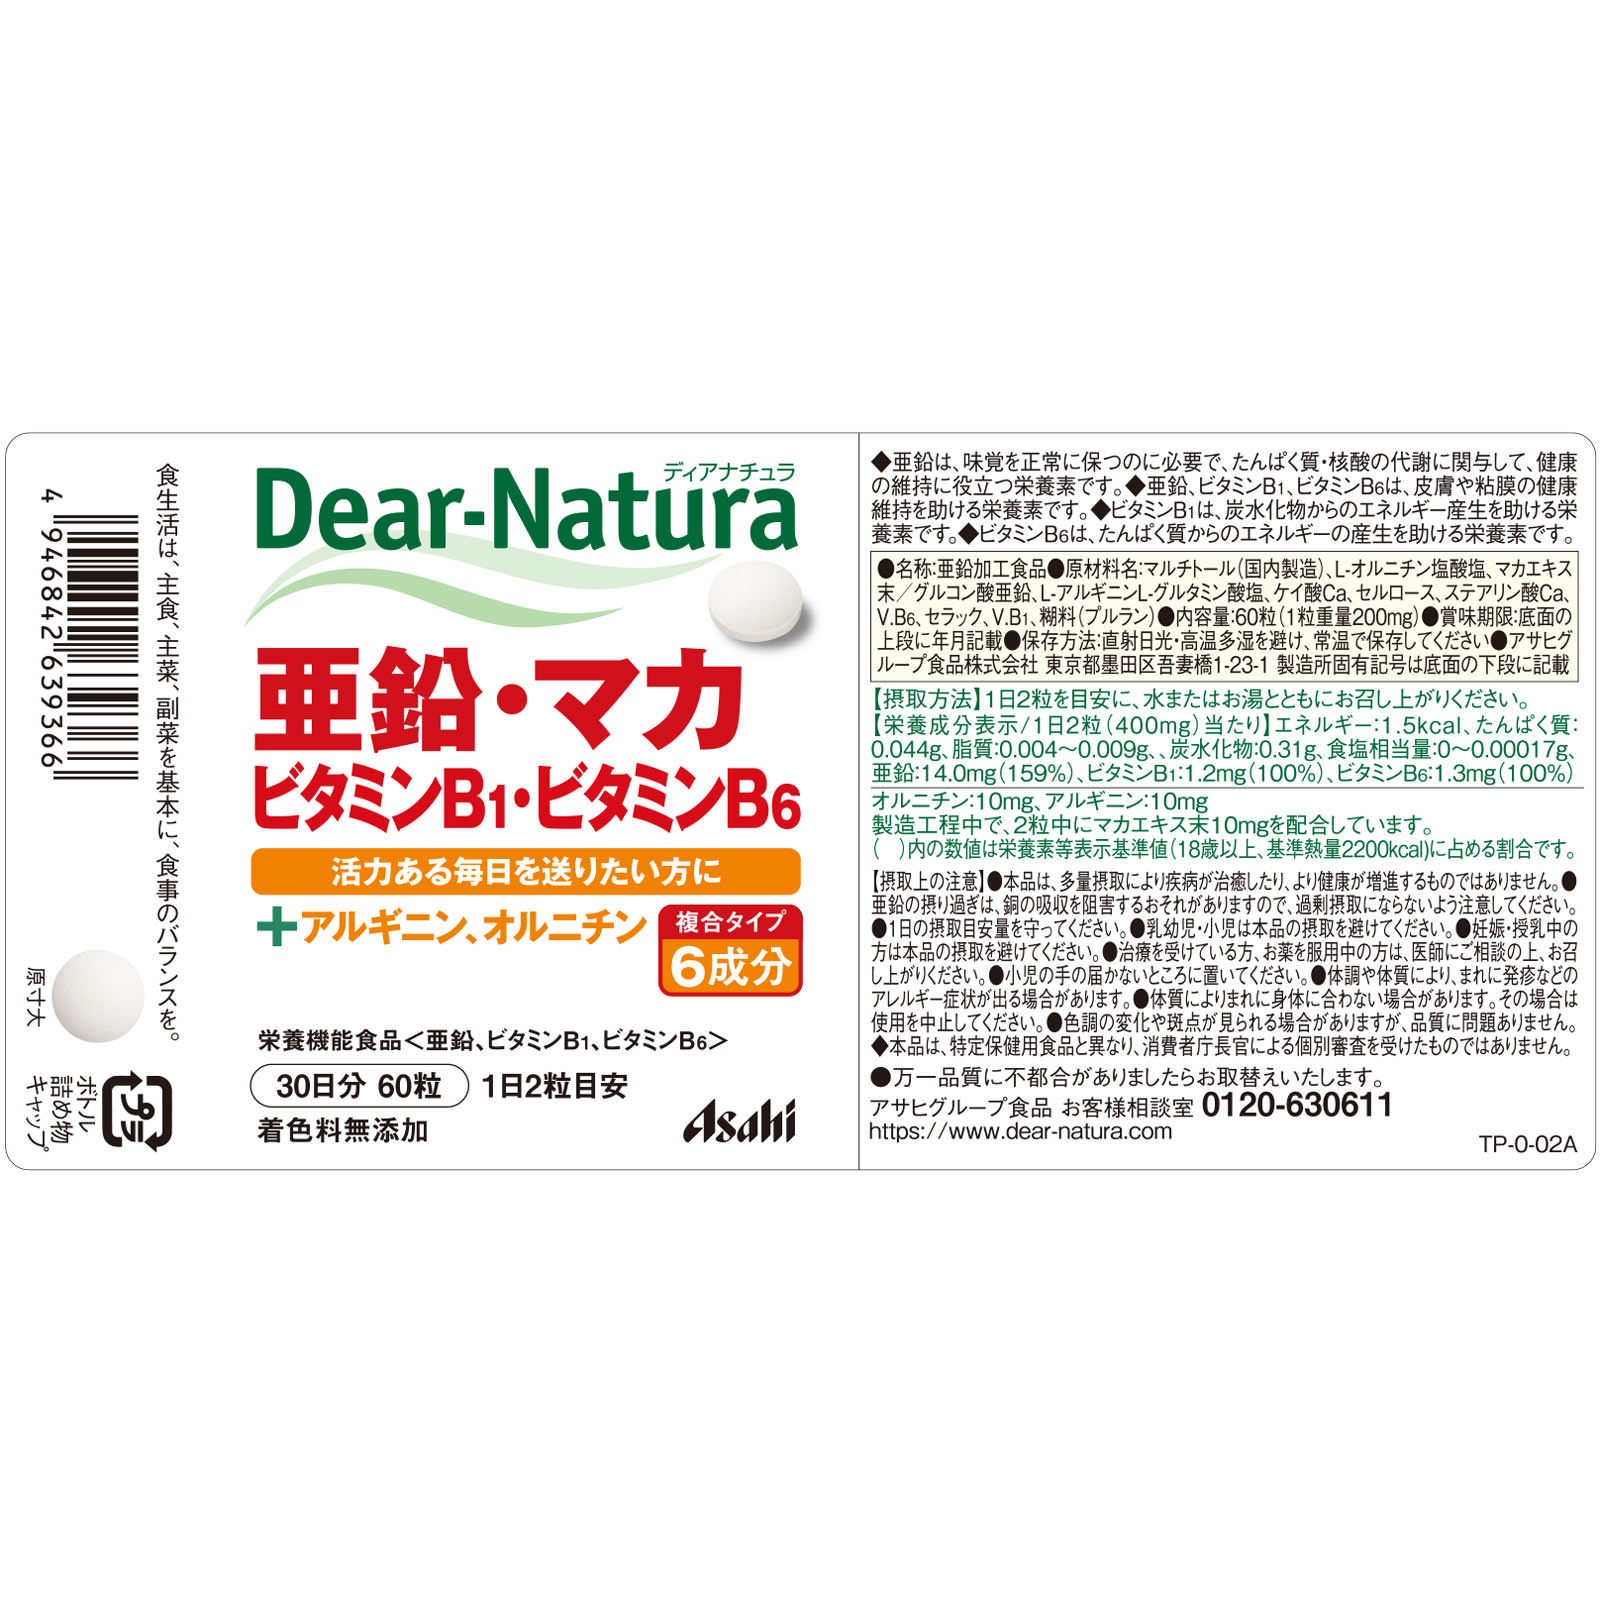 486円 【気質アップ】 ディアナチュラ Dear-Natura 亜鉛 マカ ビタミンB1 ビタミンB6 1セット 60日分×2個 アサヒグループ食品